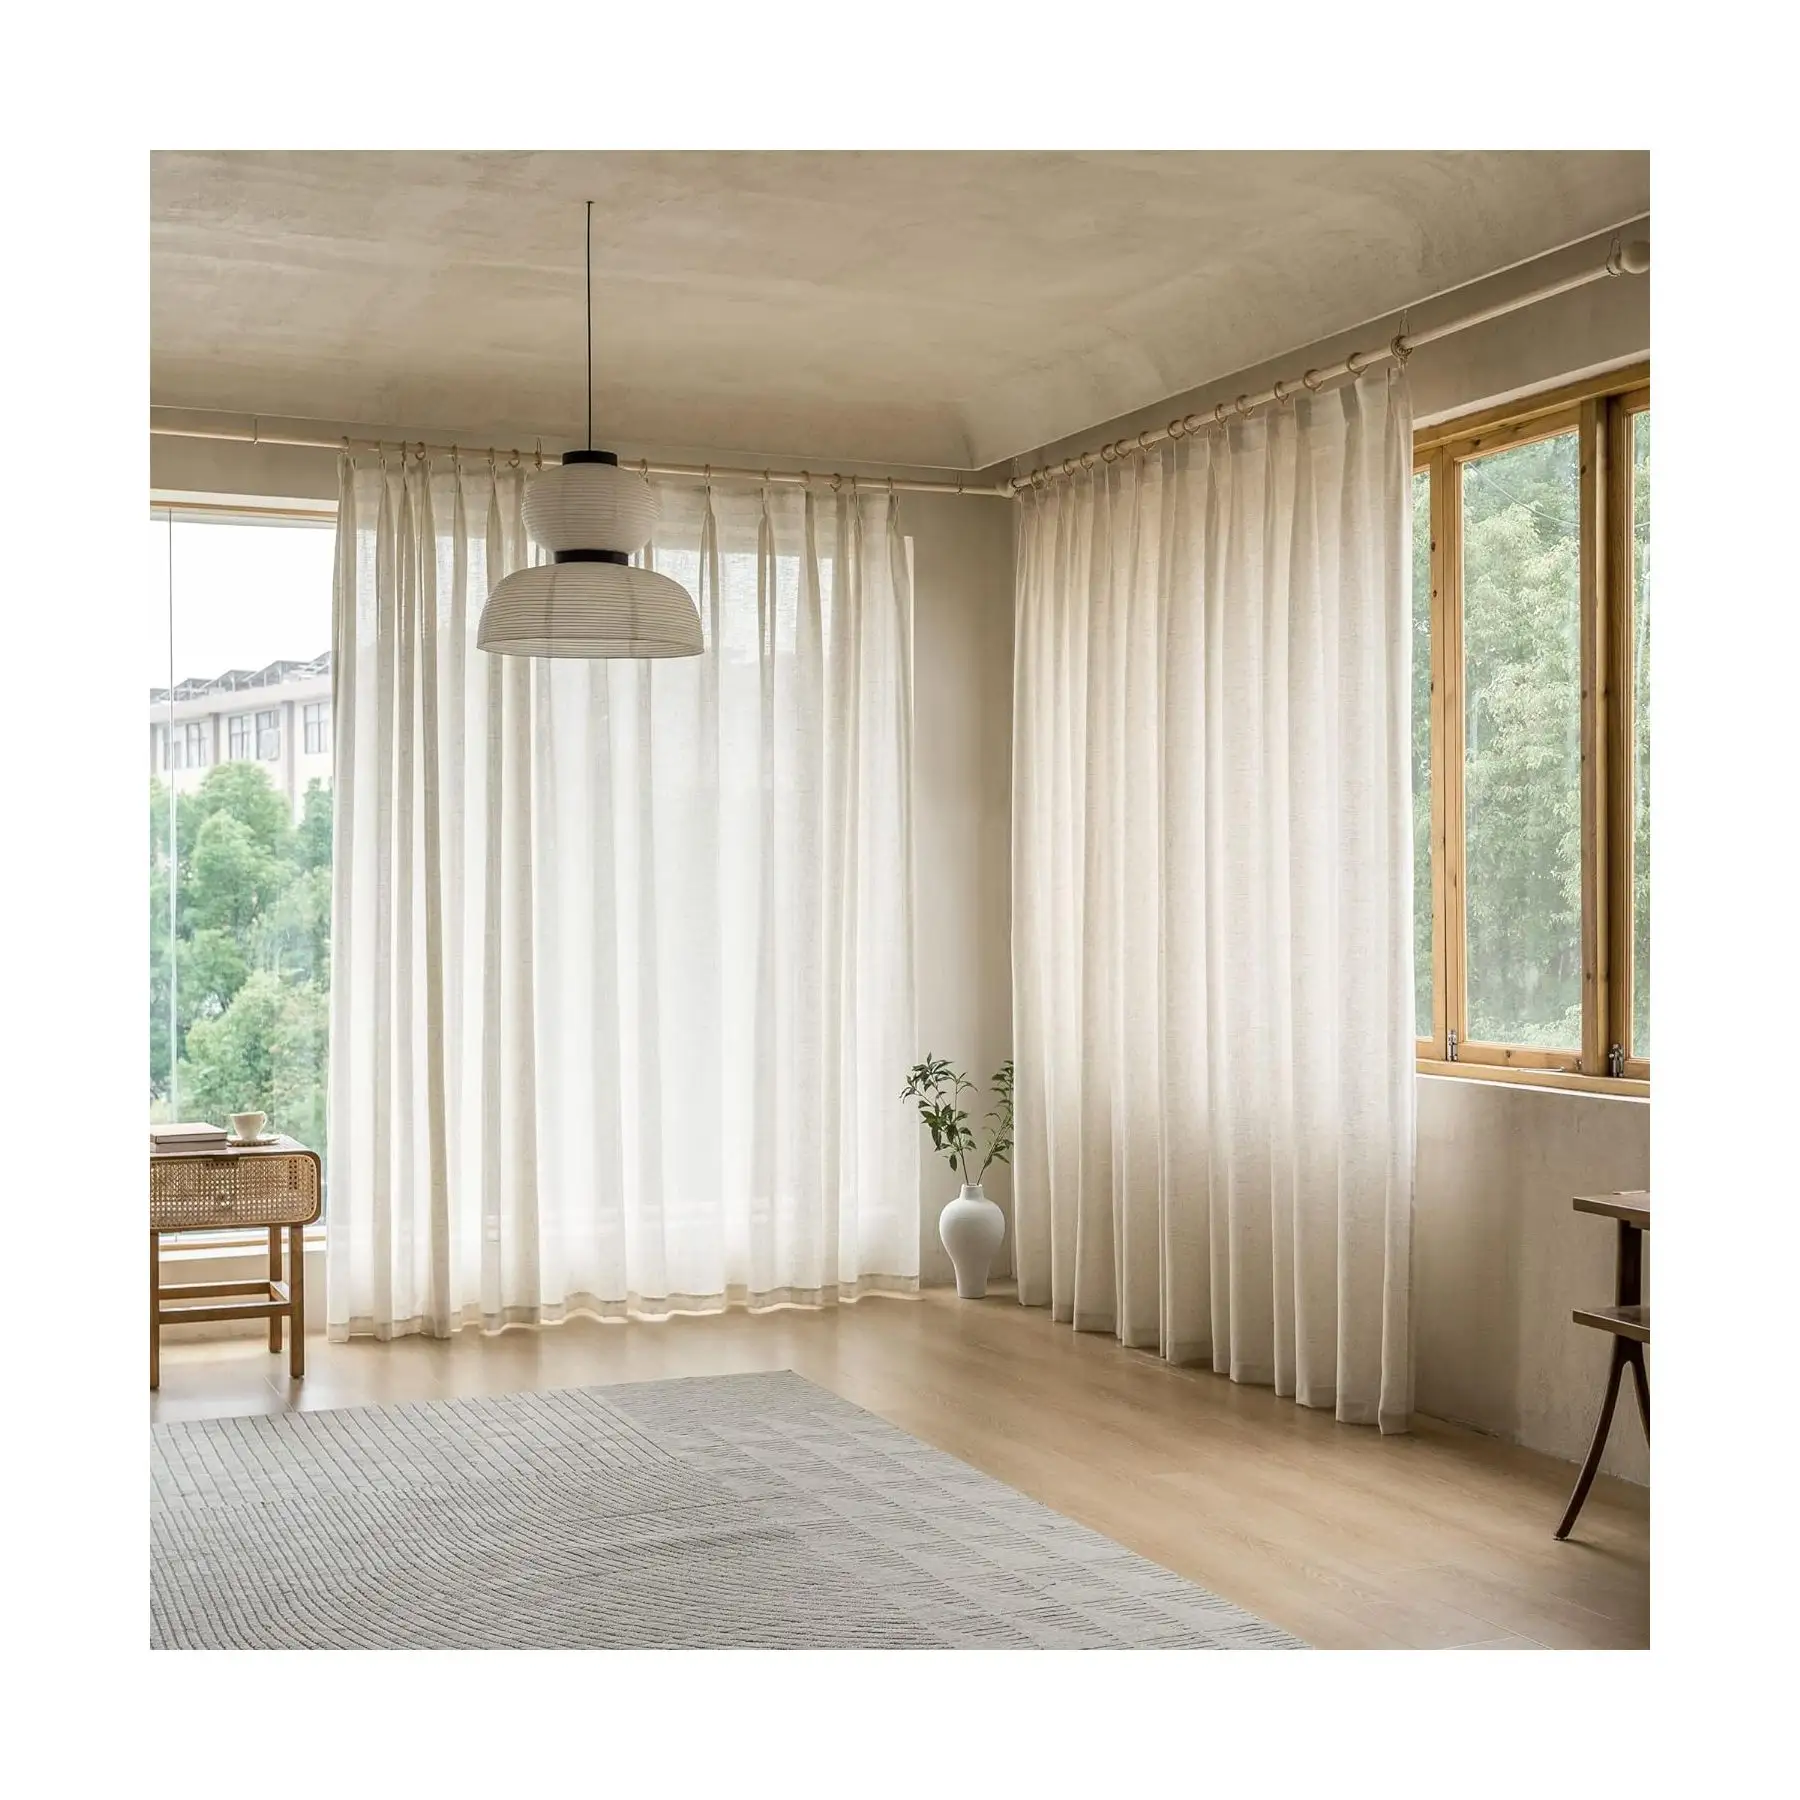 Vente en gros de rideaux occultants solides de haute qualité Rideaux d'extérieur en polyester à œillets pour fenêtres